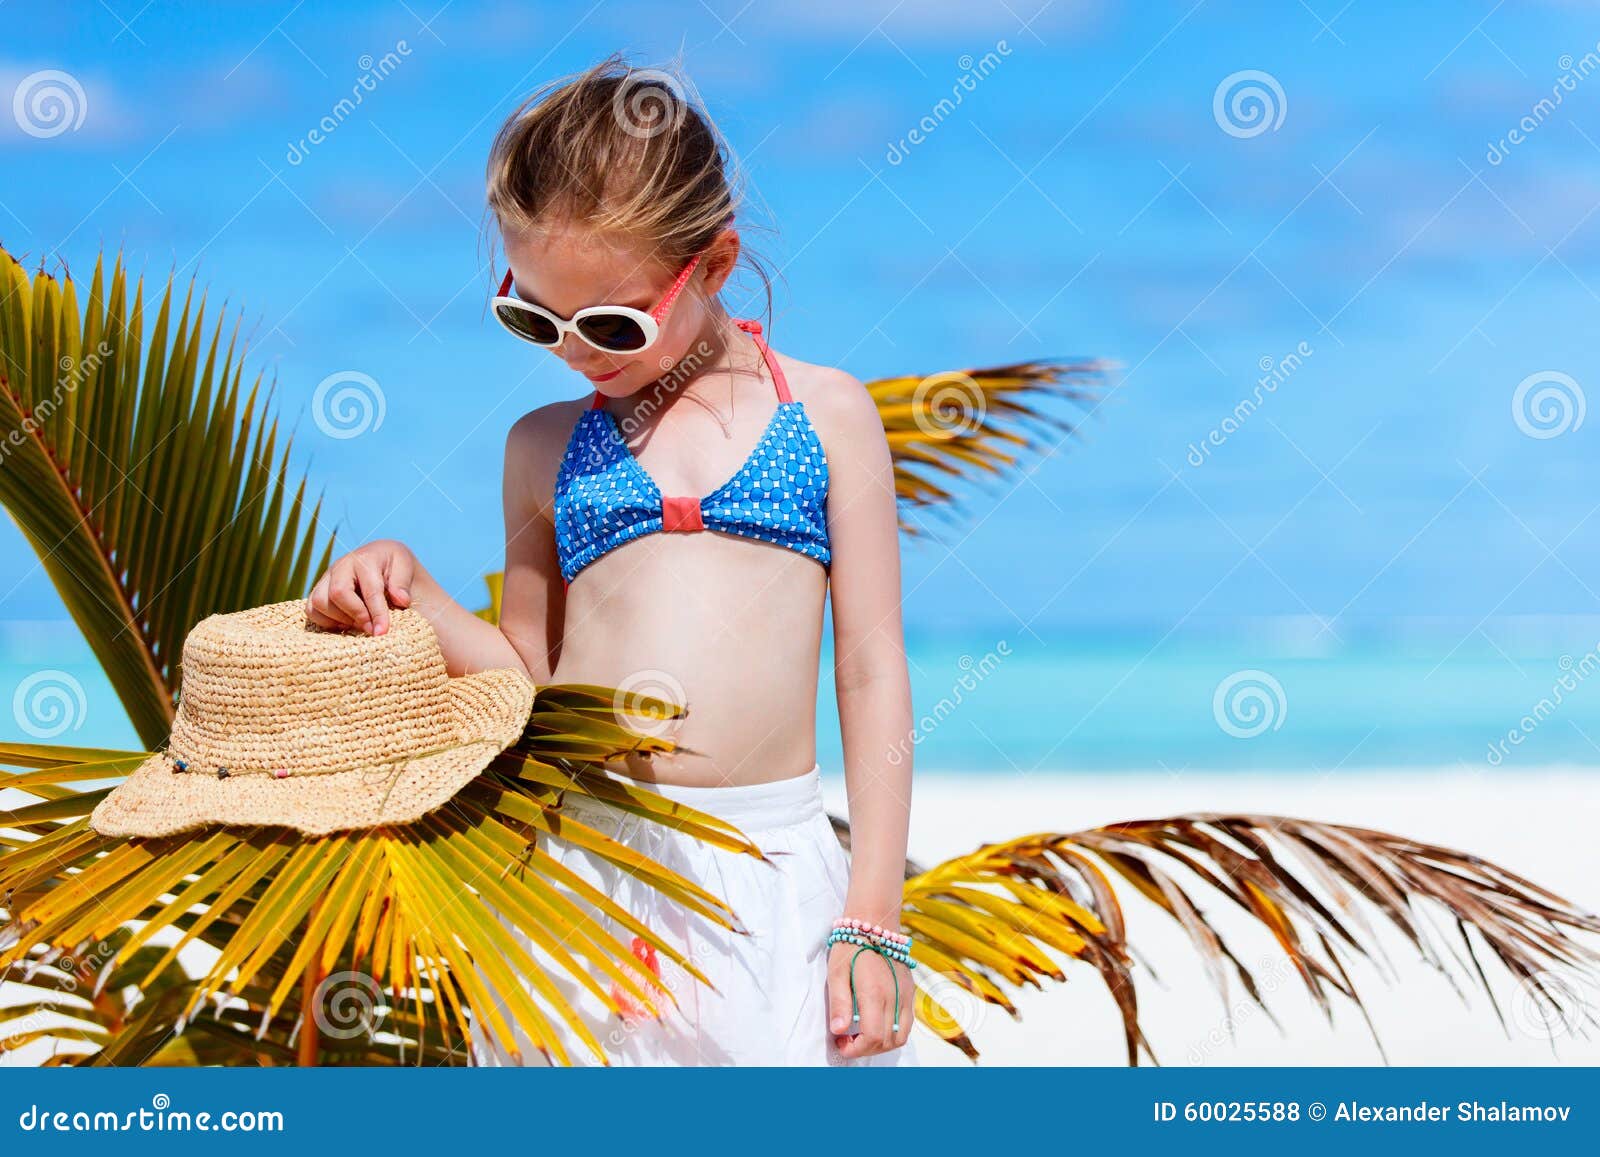 прелестная девушка пляжа немногая. Прелестная маленькая девочка на пляже во время летних каникулов